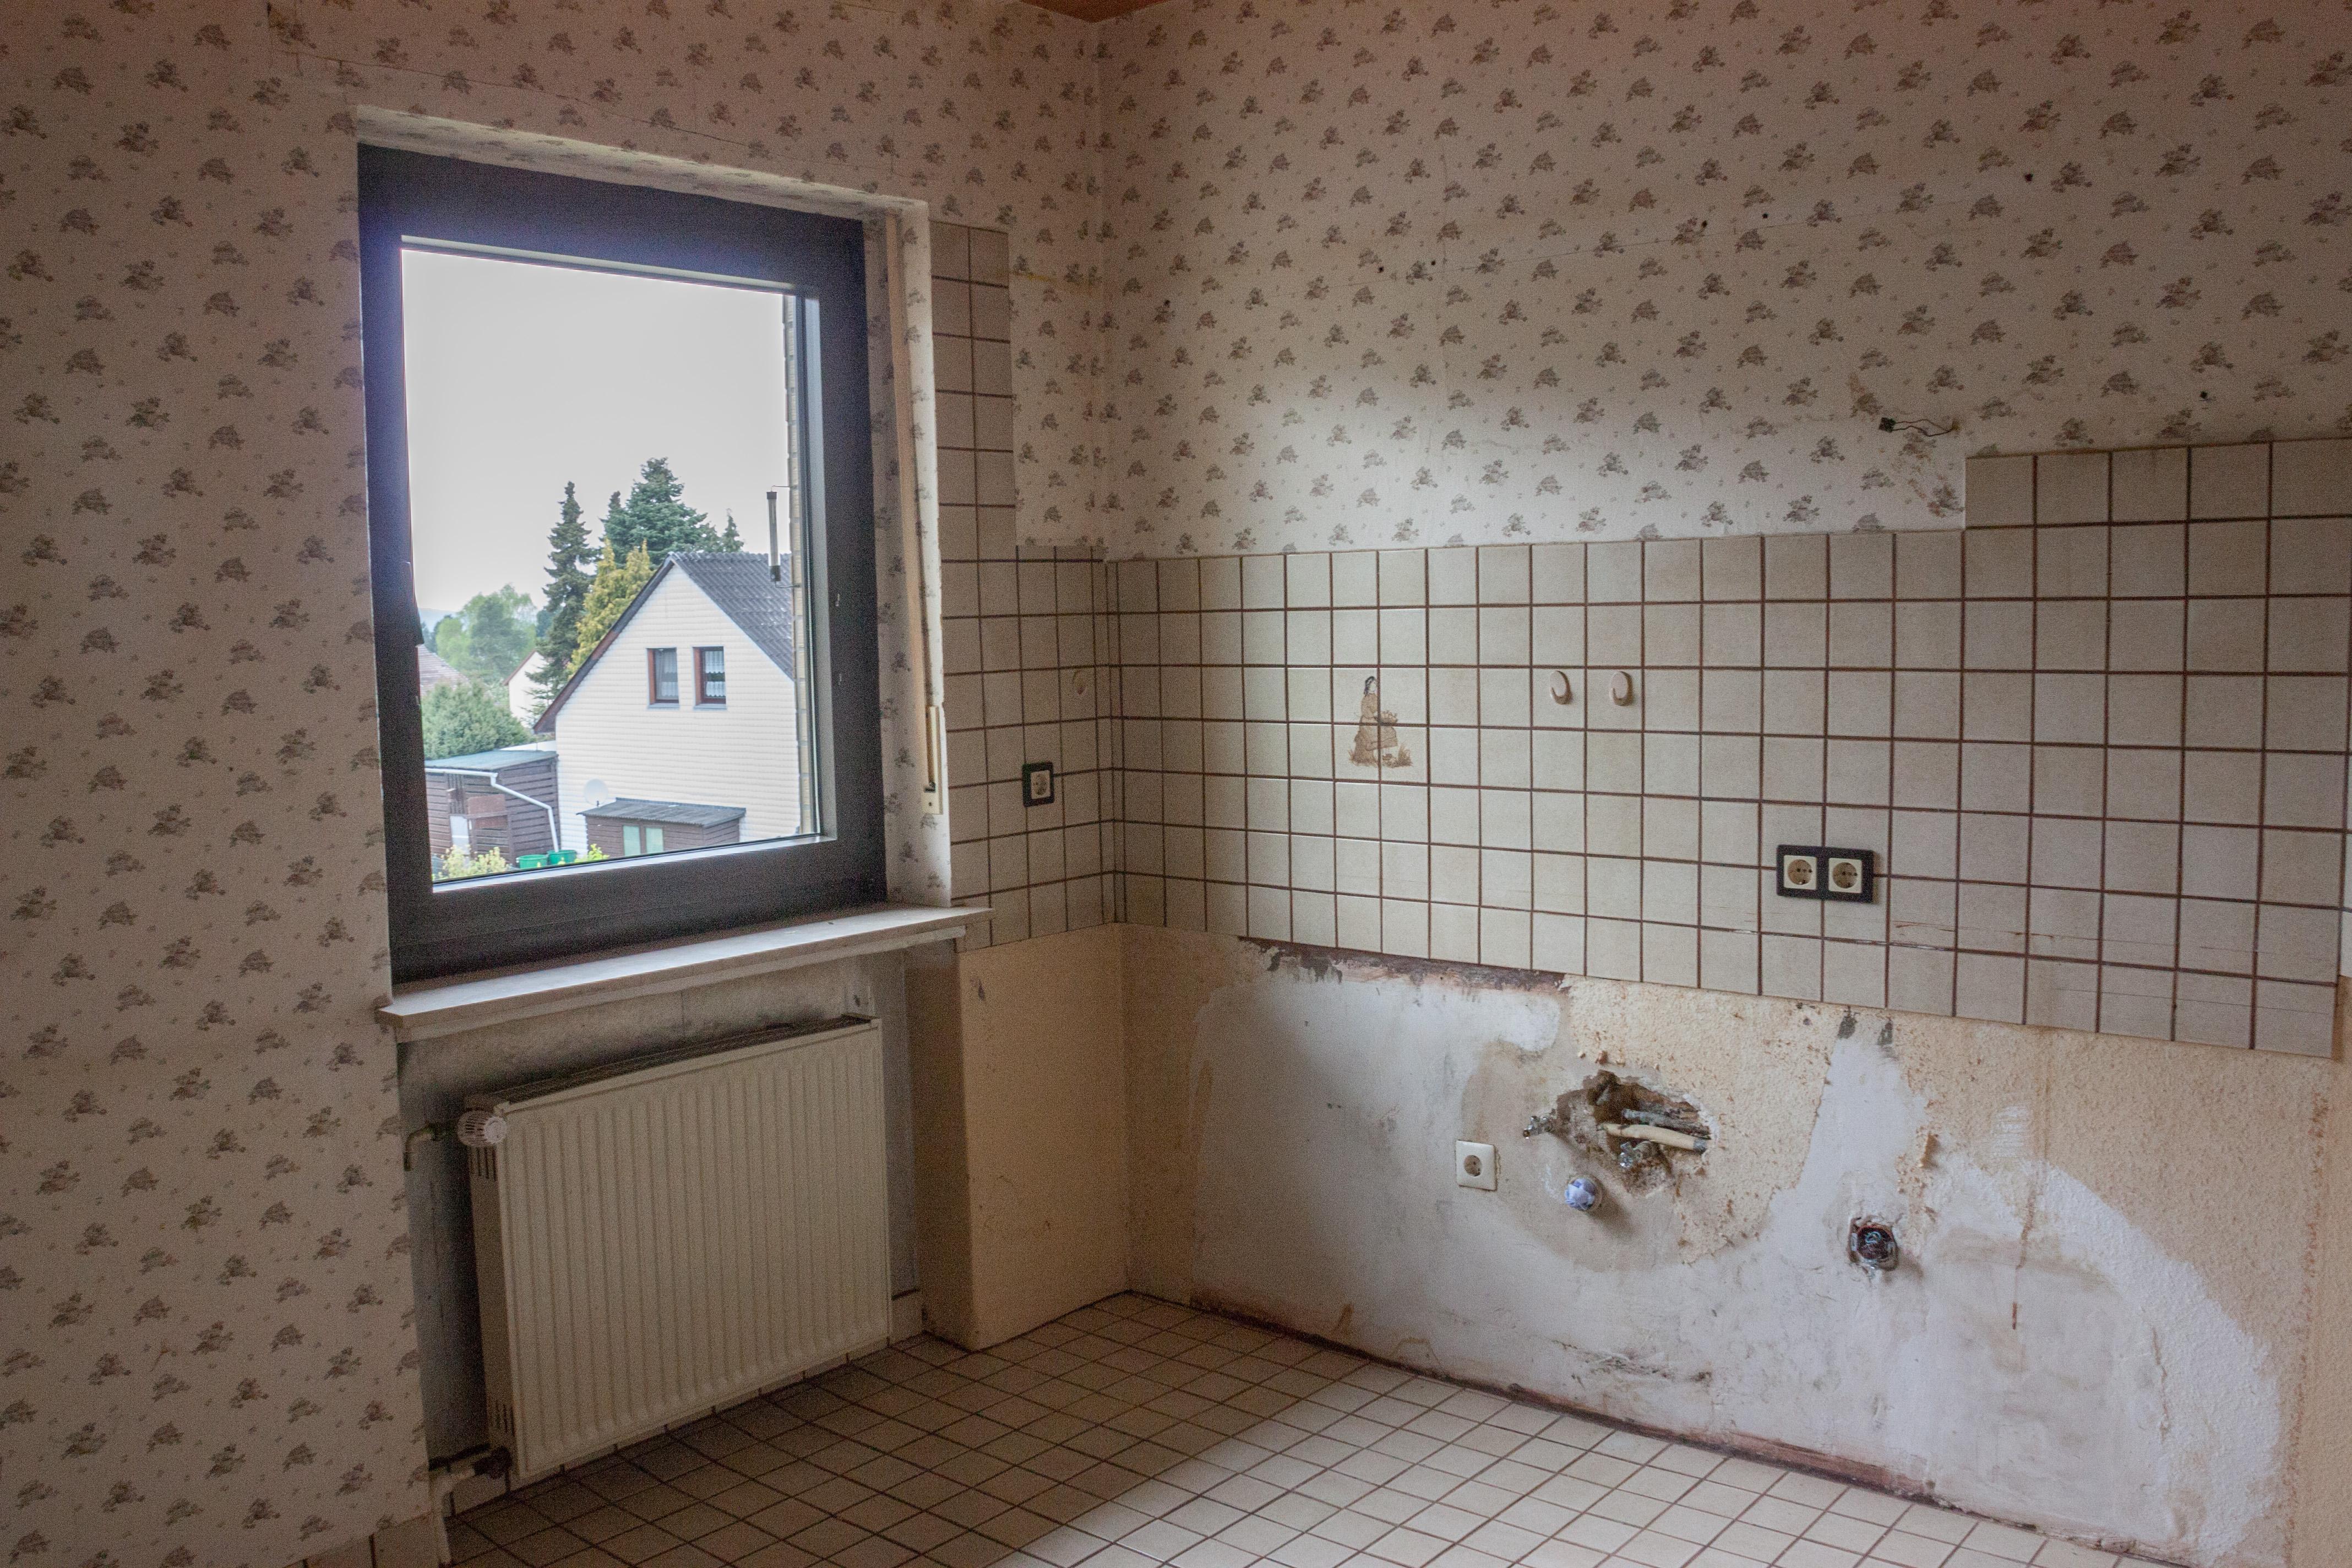 Küche - vorher #küche ©IMMOTION Home Staging / Florian Gürbig